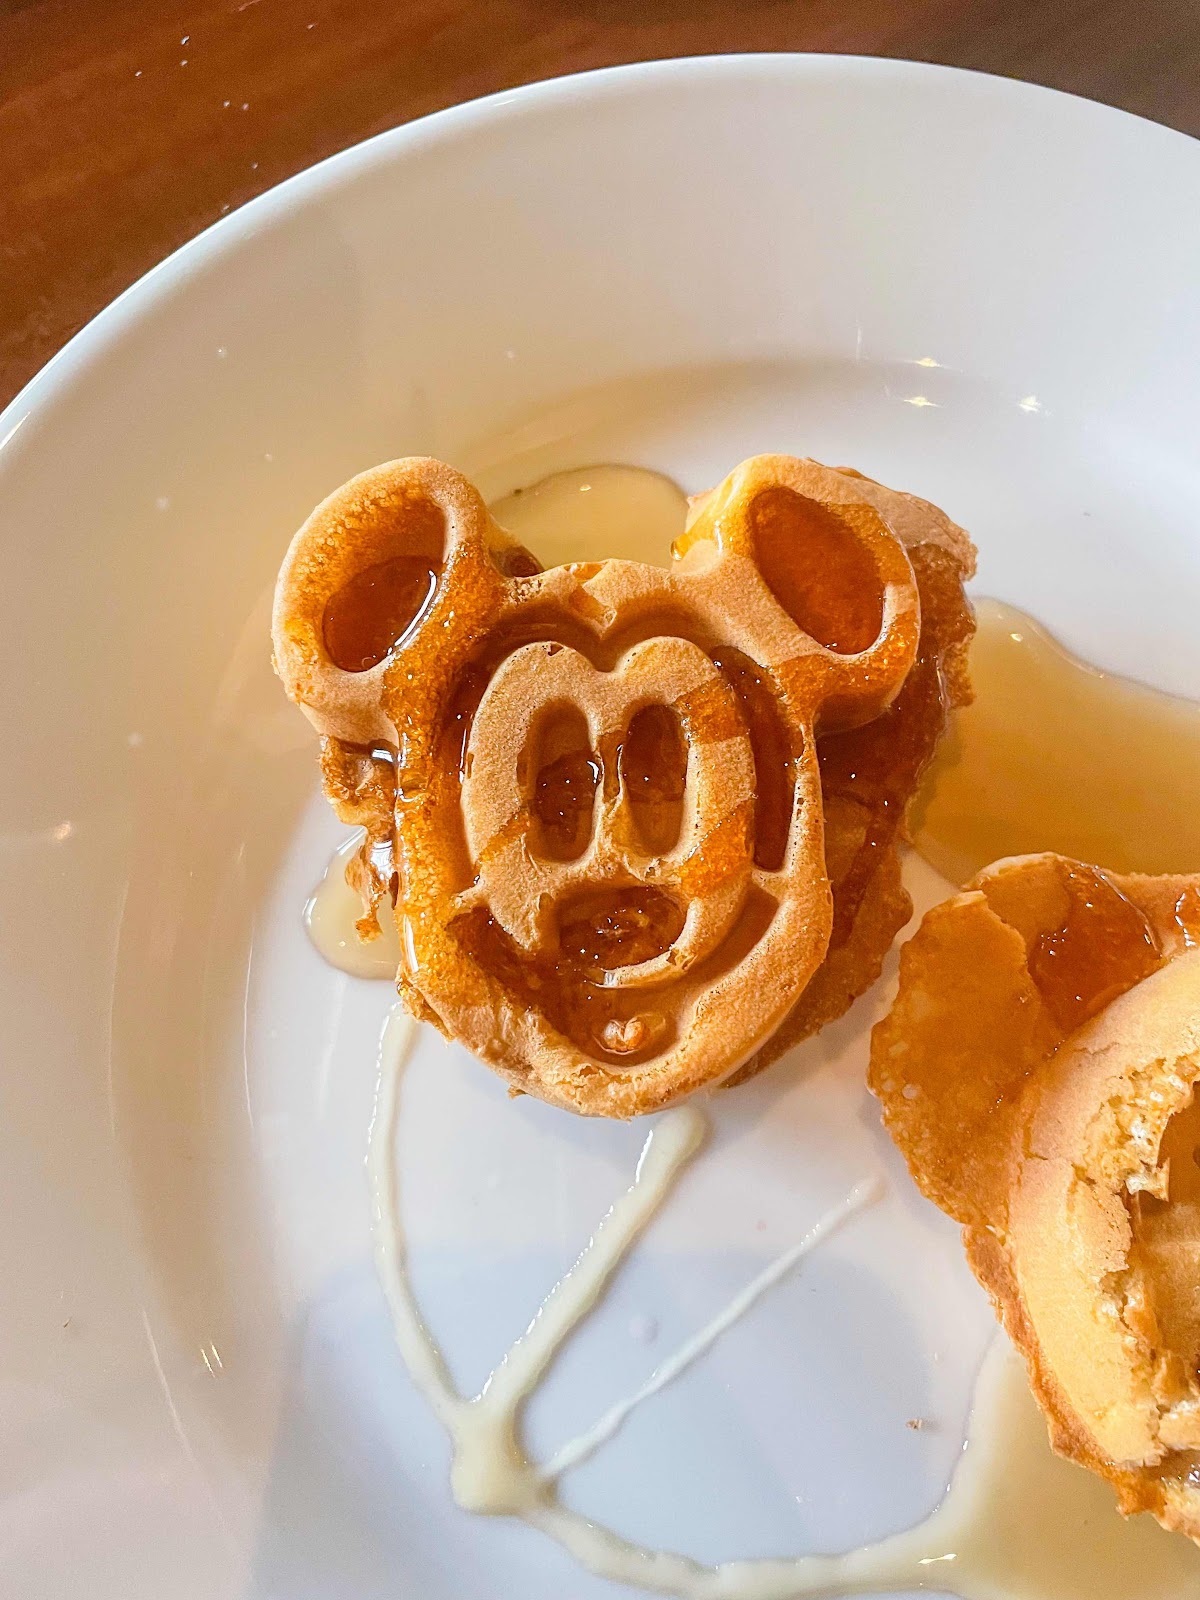 Mickey waffles from Ohana’s, Disney’s Polynesian Resort